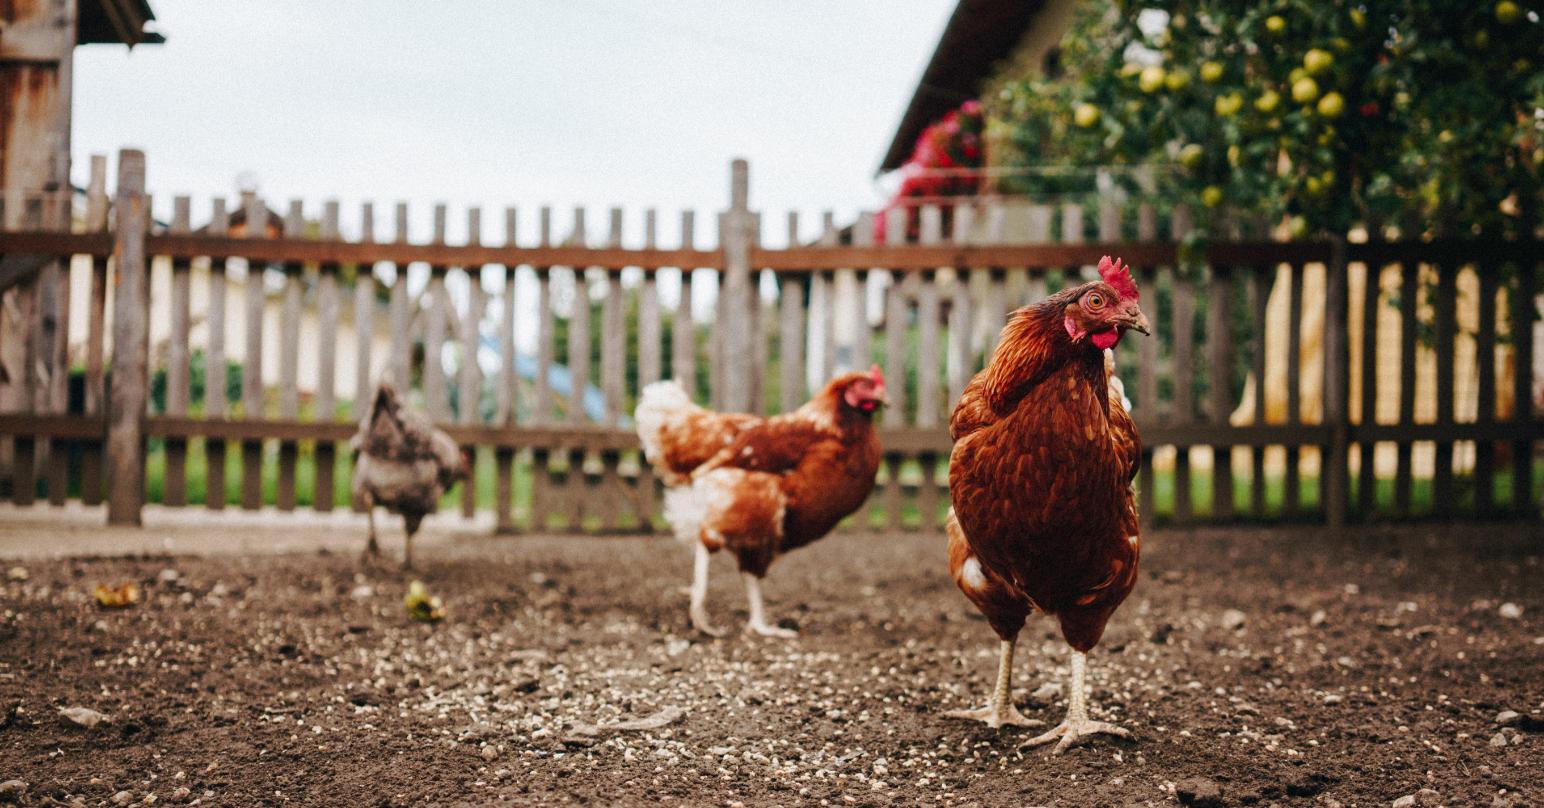 farm & home - chickens free range